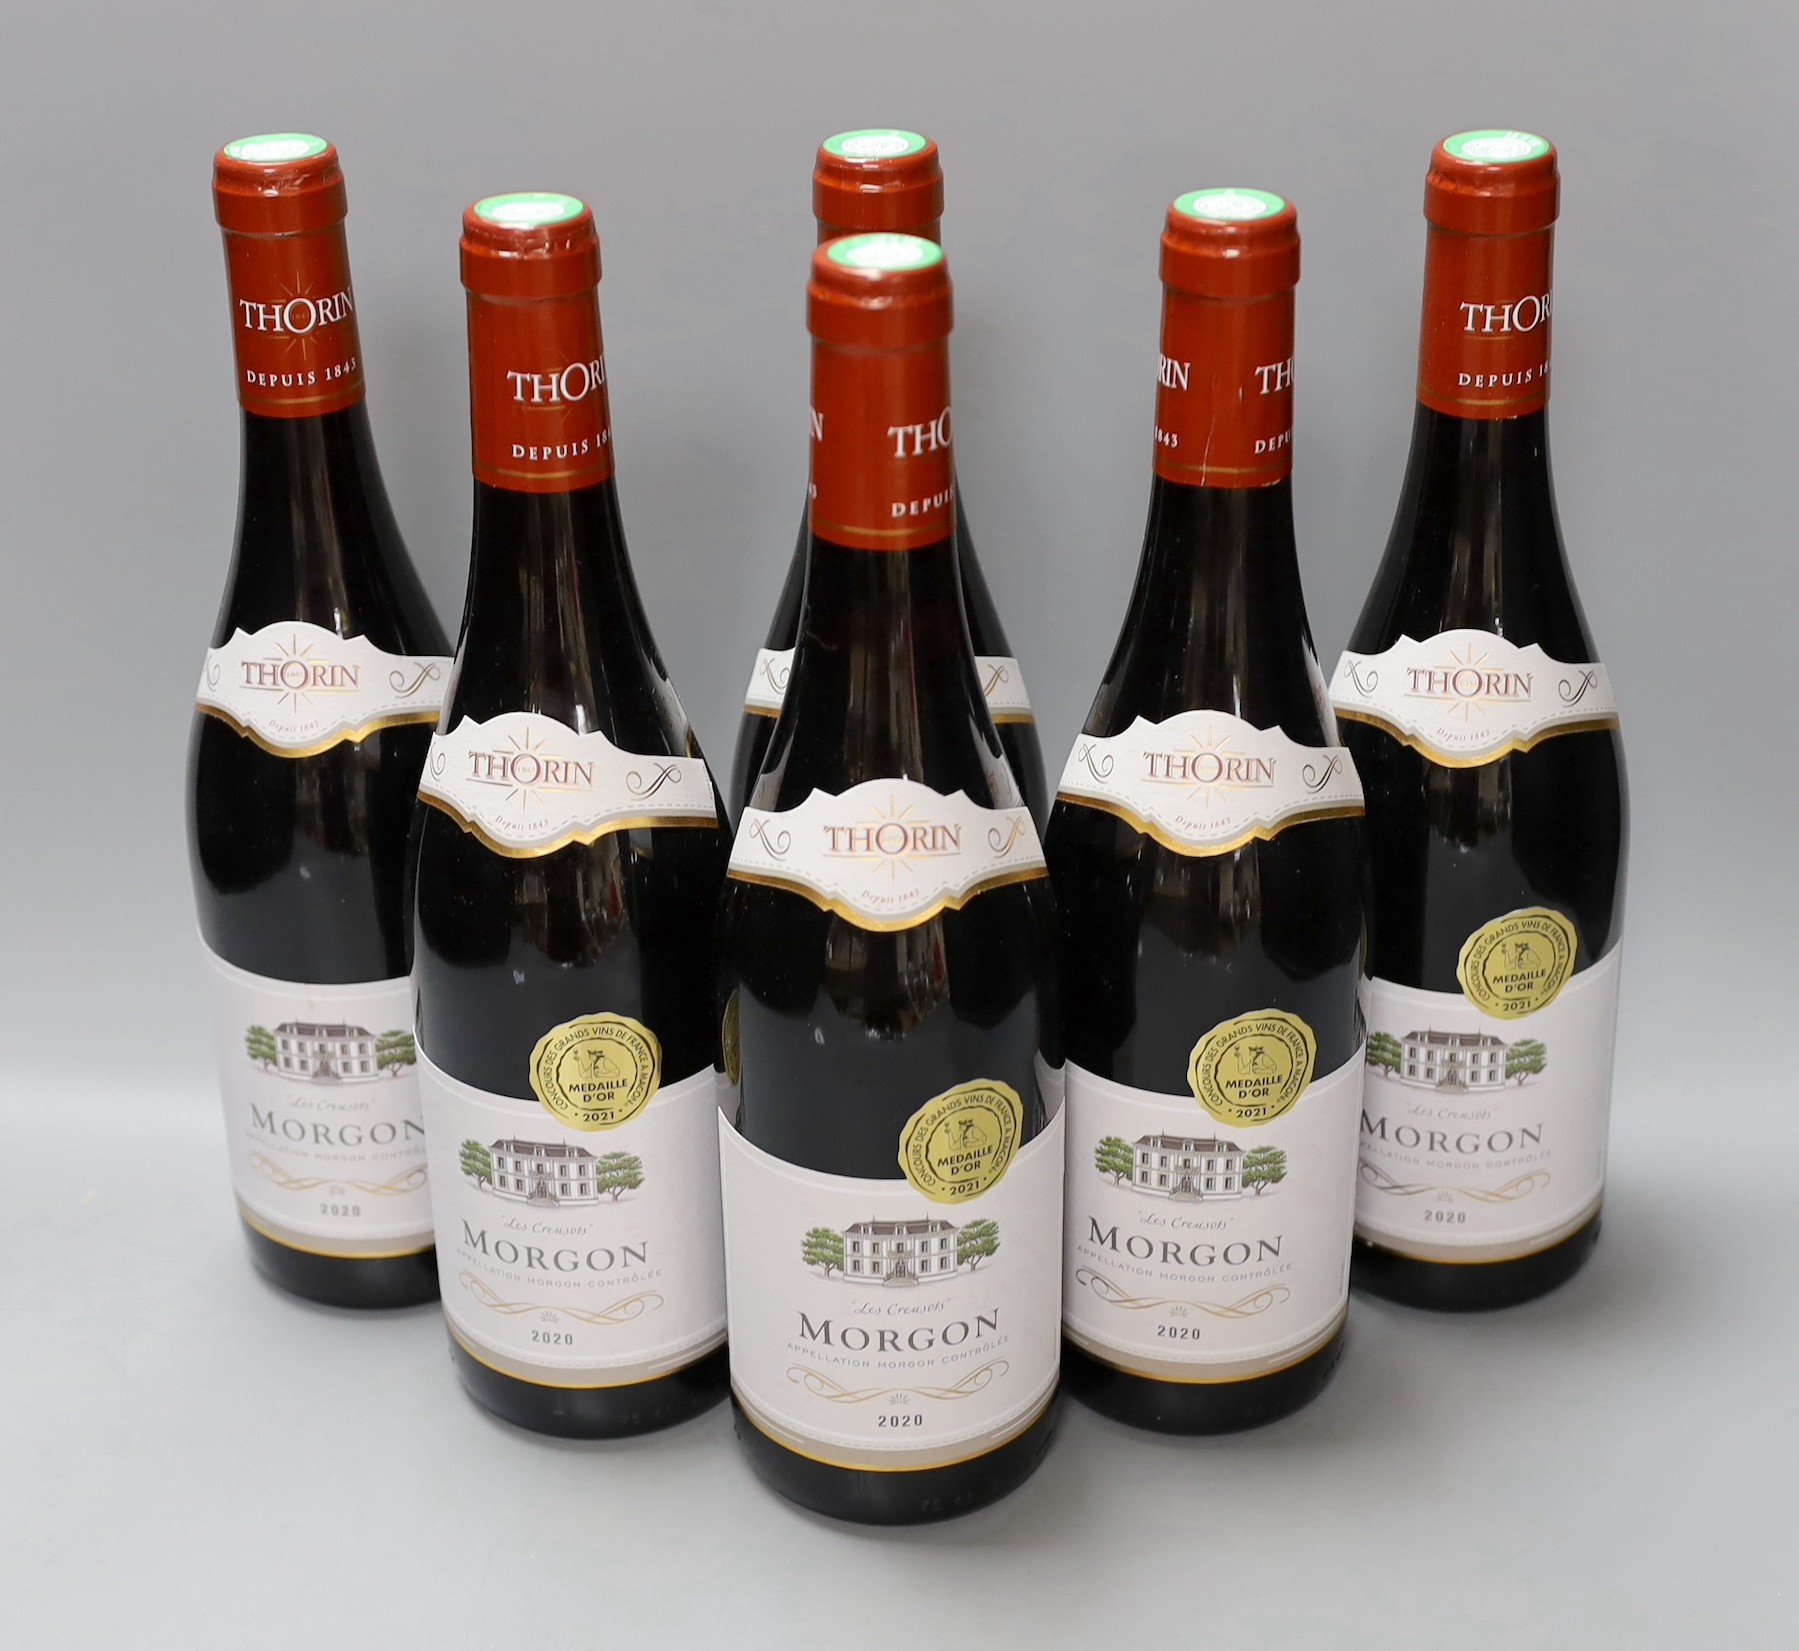 Six bottles of wine: 2020 Morgan “Les Creusots”